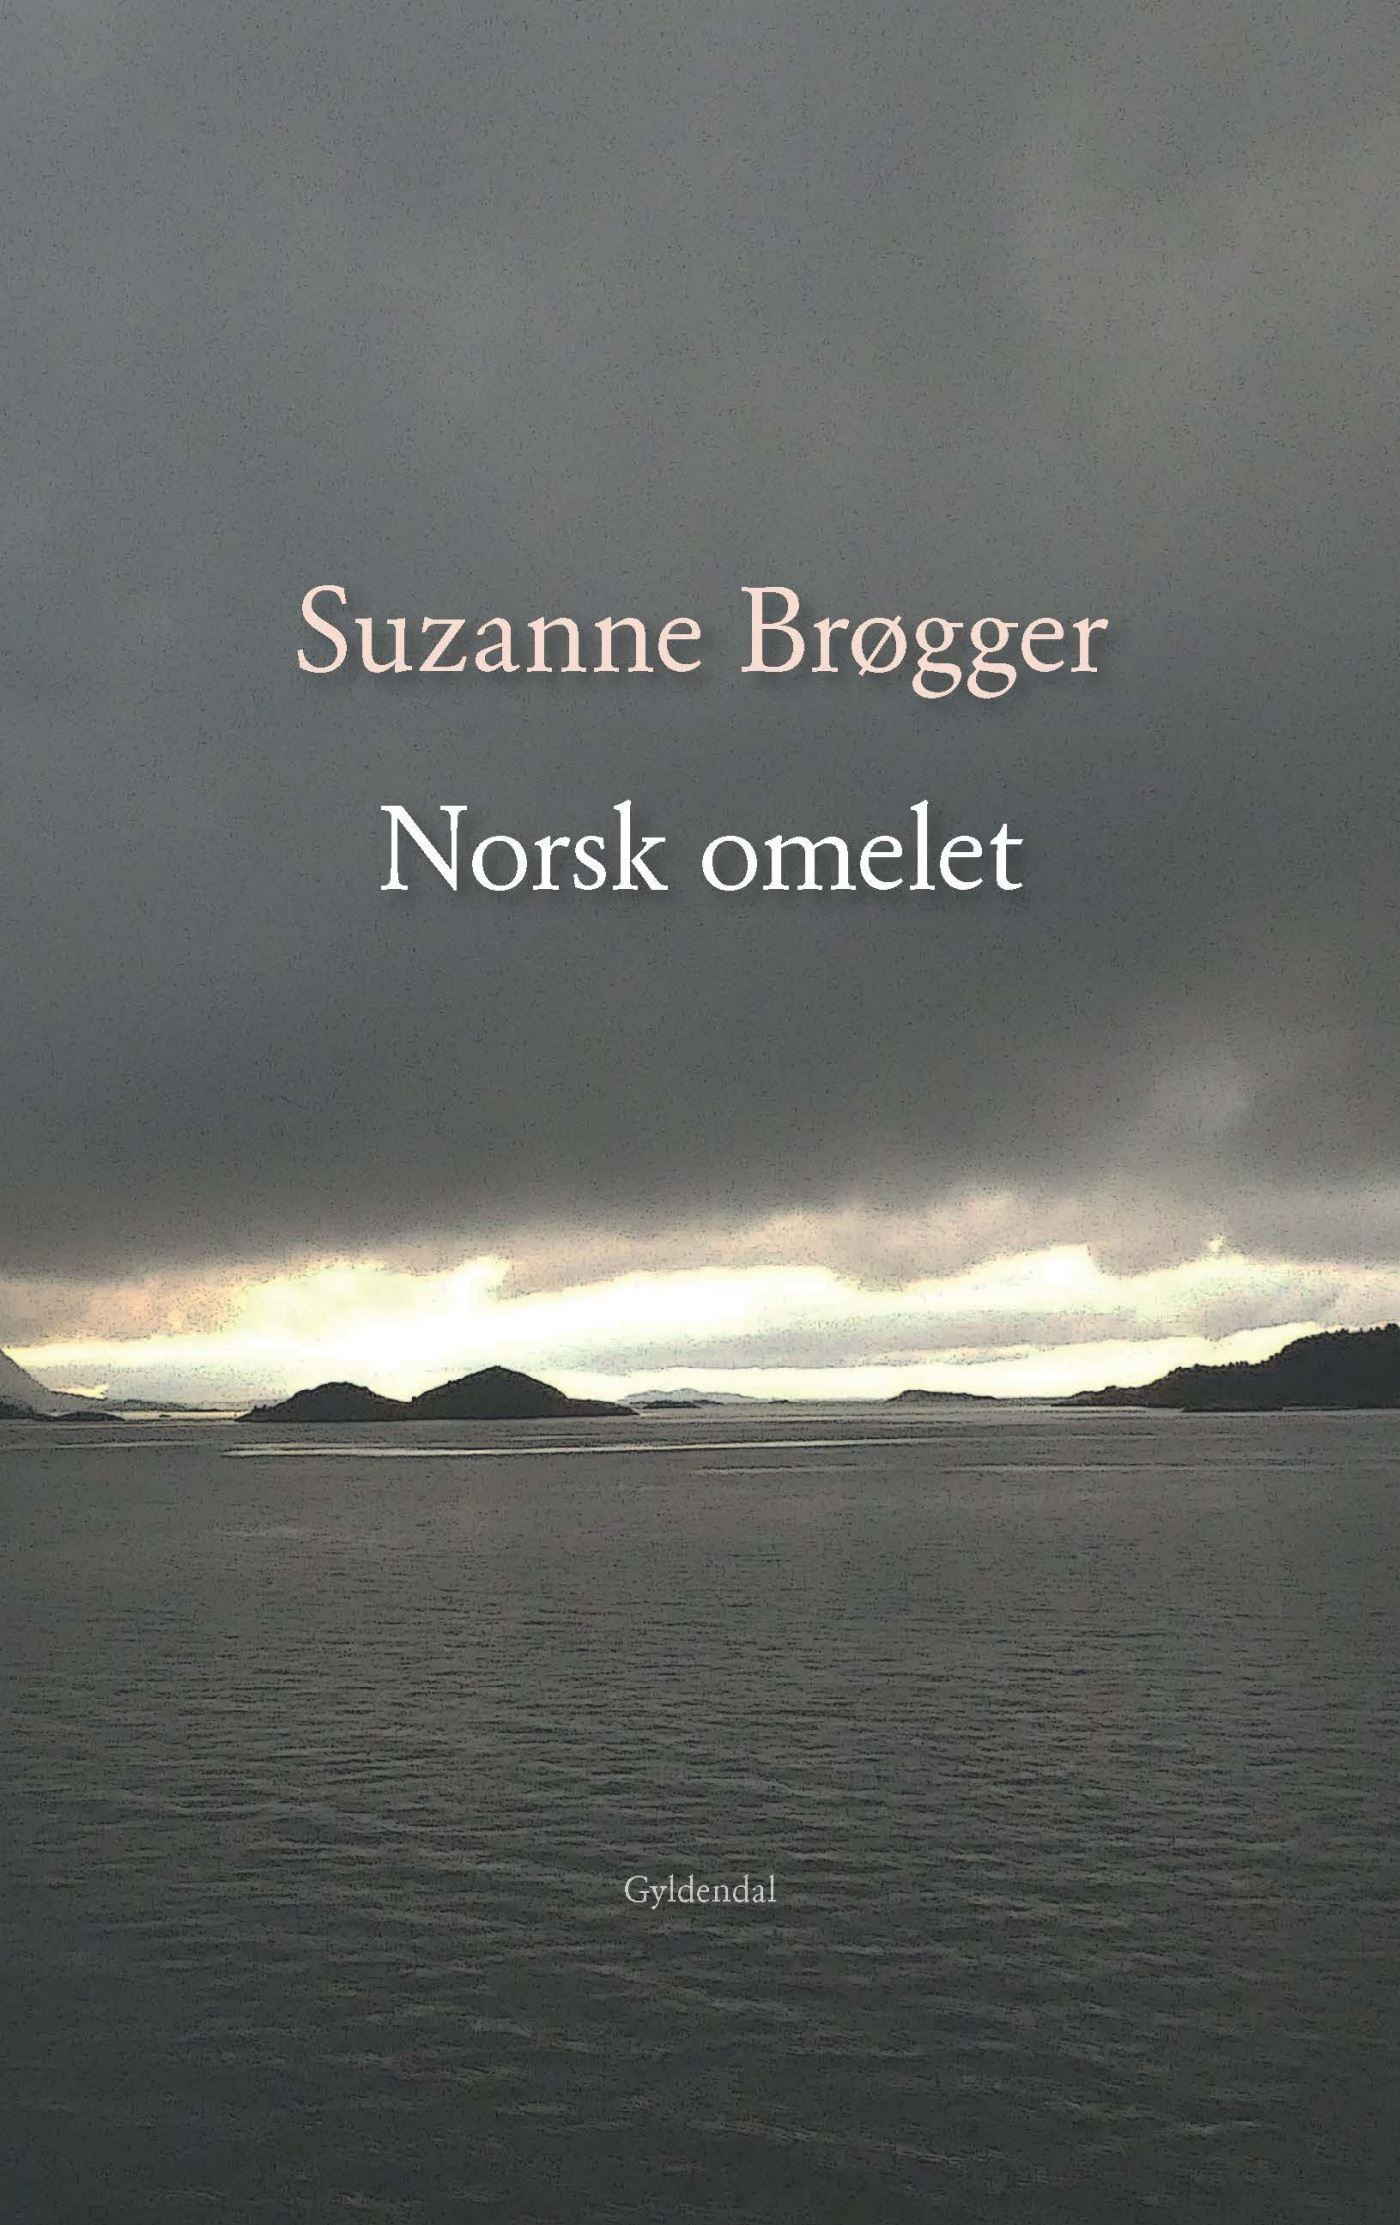 Norsk omelet, lydbog af Suzanne Brøgger